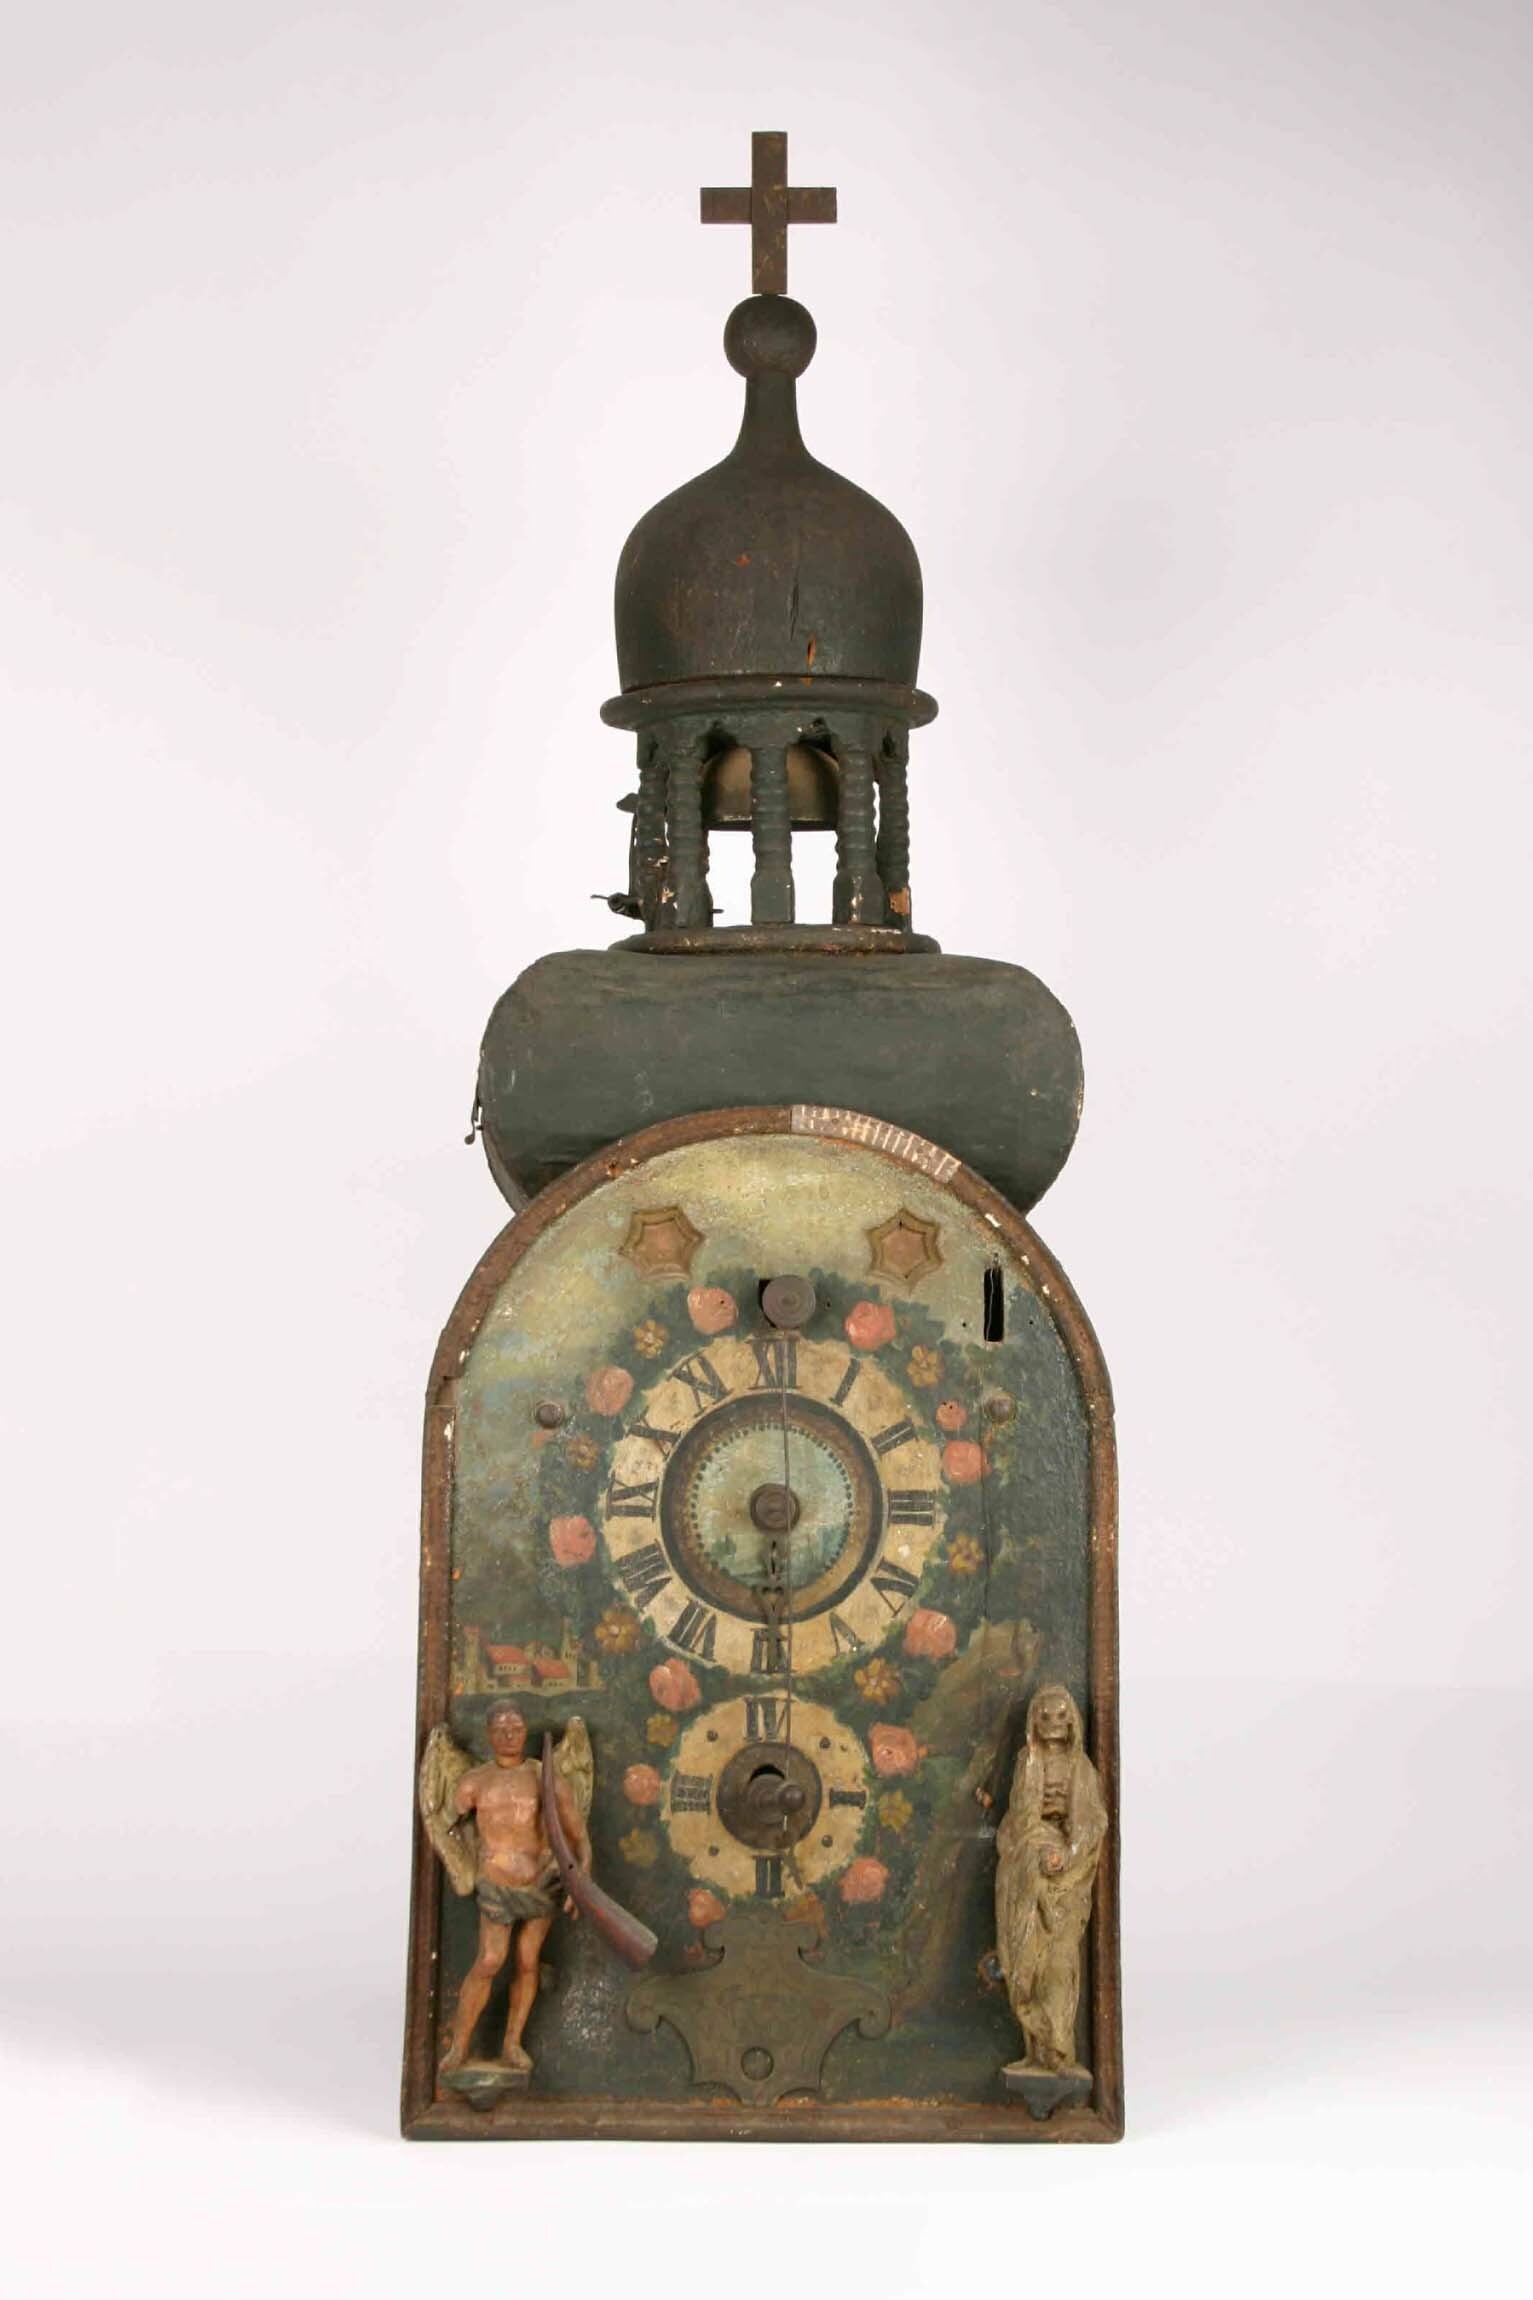 Holzräderuhr, wohl 1749 (Deutsches Uhrenmuseum CC BY-SA)